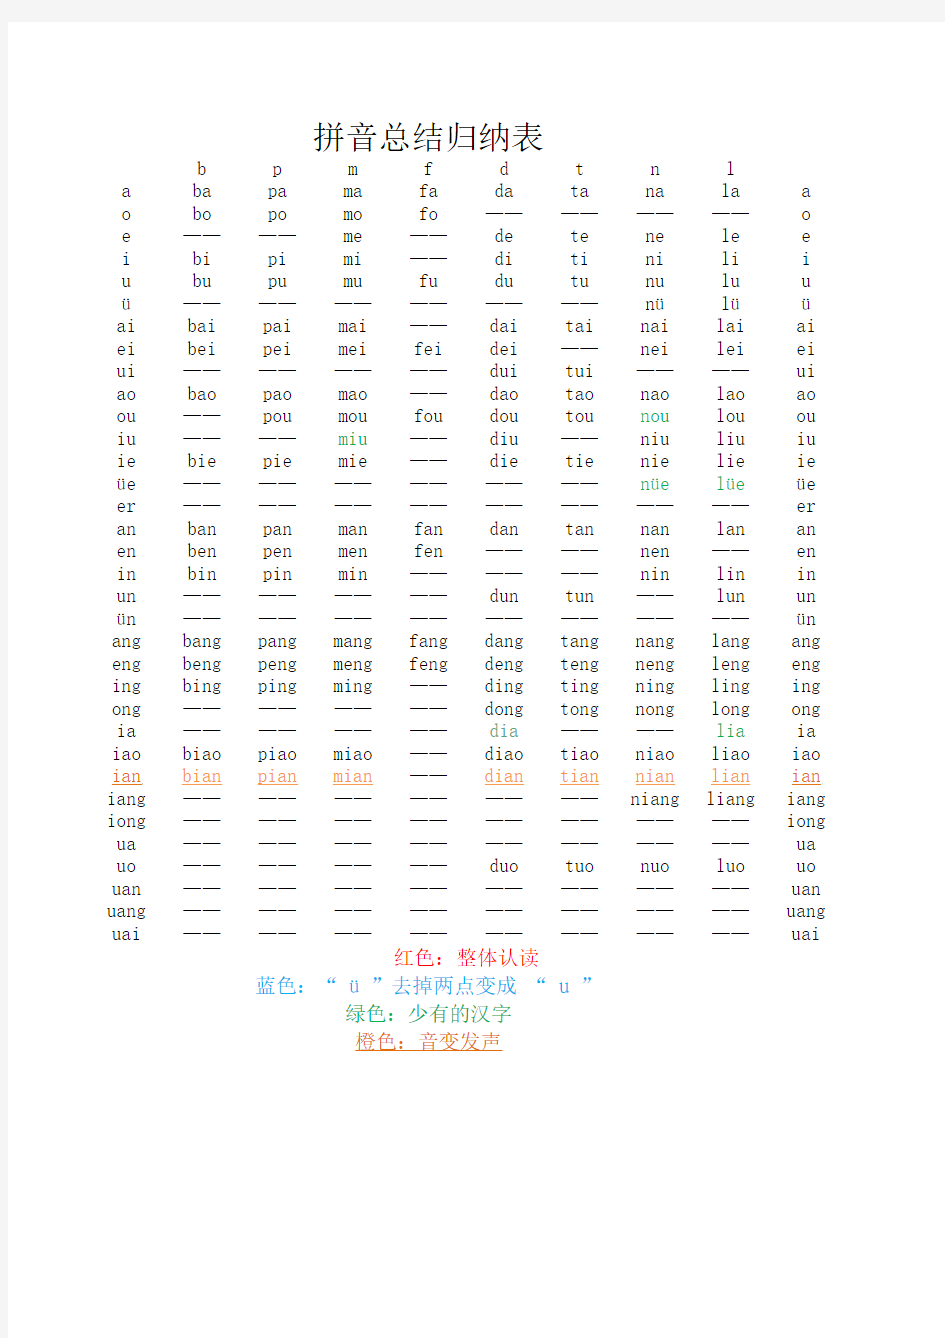 汉语拼音发音归纳表